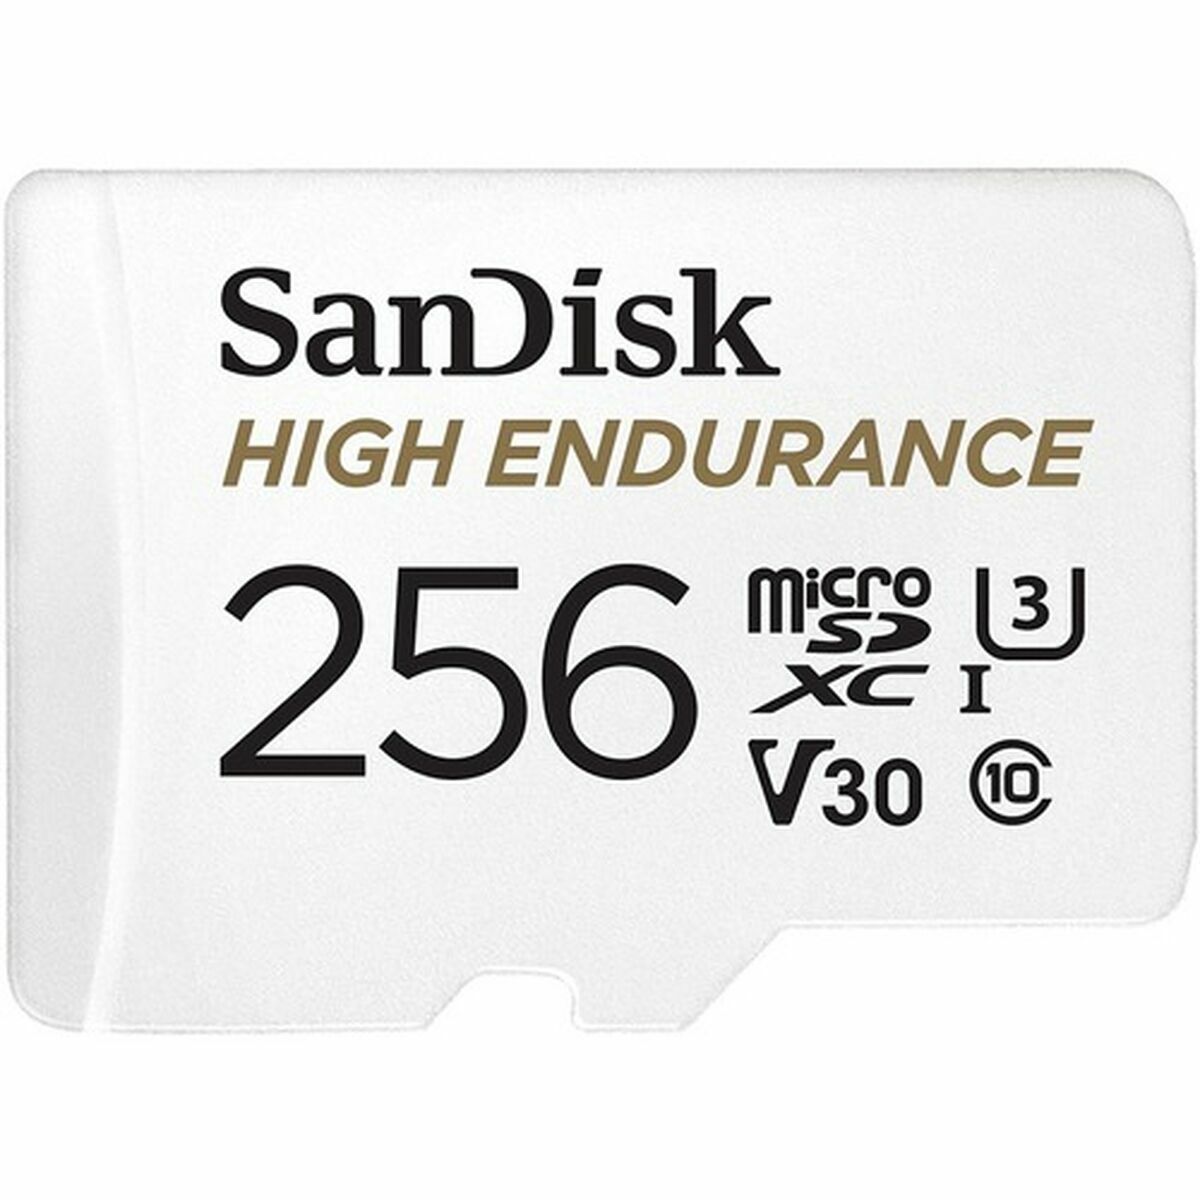 Osta tuote Micro SD -Kortti SanDisk High Endurance 256 GB verkkokaupastamme Korhone: Tietokoneet & Elektroniikka 10% alennuksella koodilla KORHONE